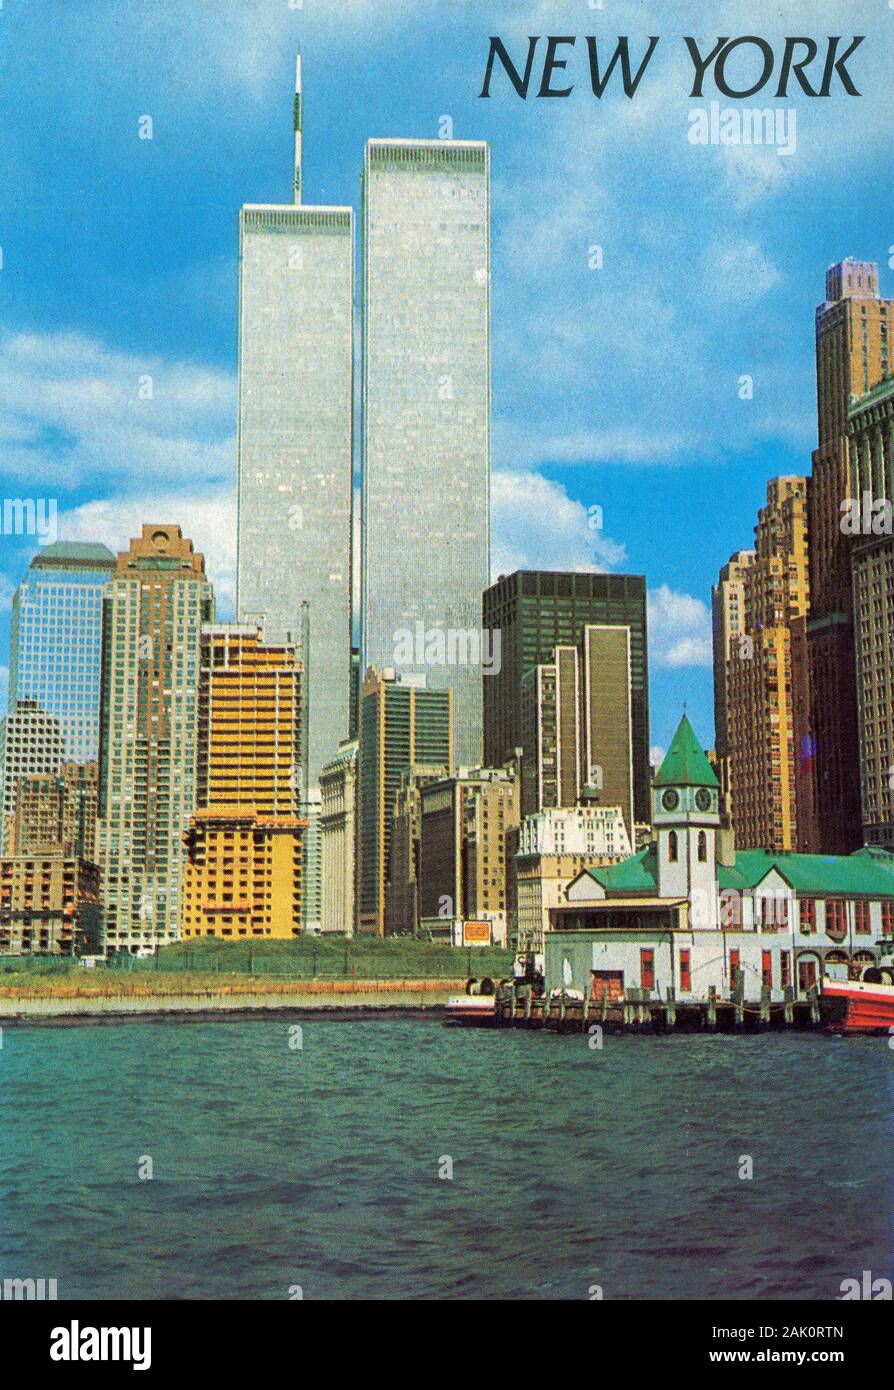 Ein historisches Postkartenbild des World Trade Centre aus dem Jahr 1997 mit zwei Türmen und dem Battery Park in New York City vor den Anschlägen von 9/11 und dem Zusammenbruch beider Türme Stockfoto